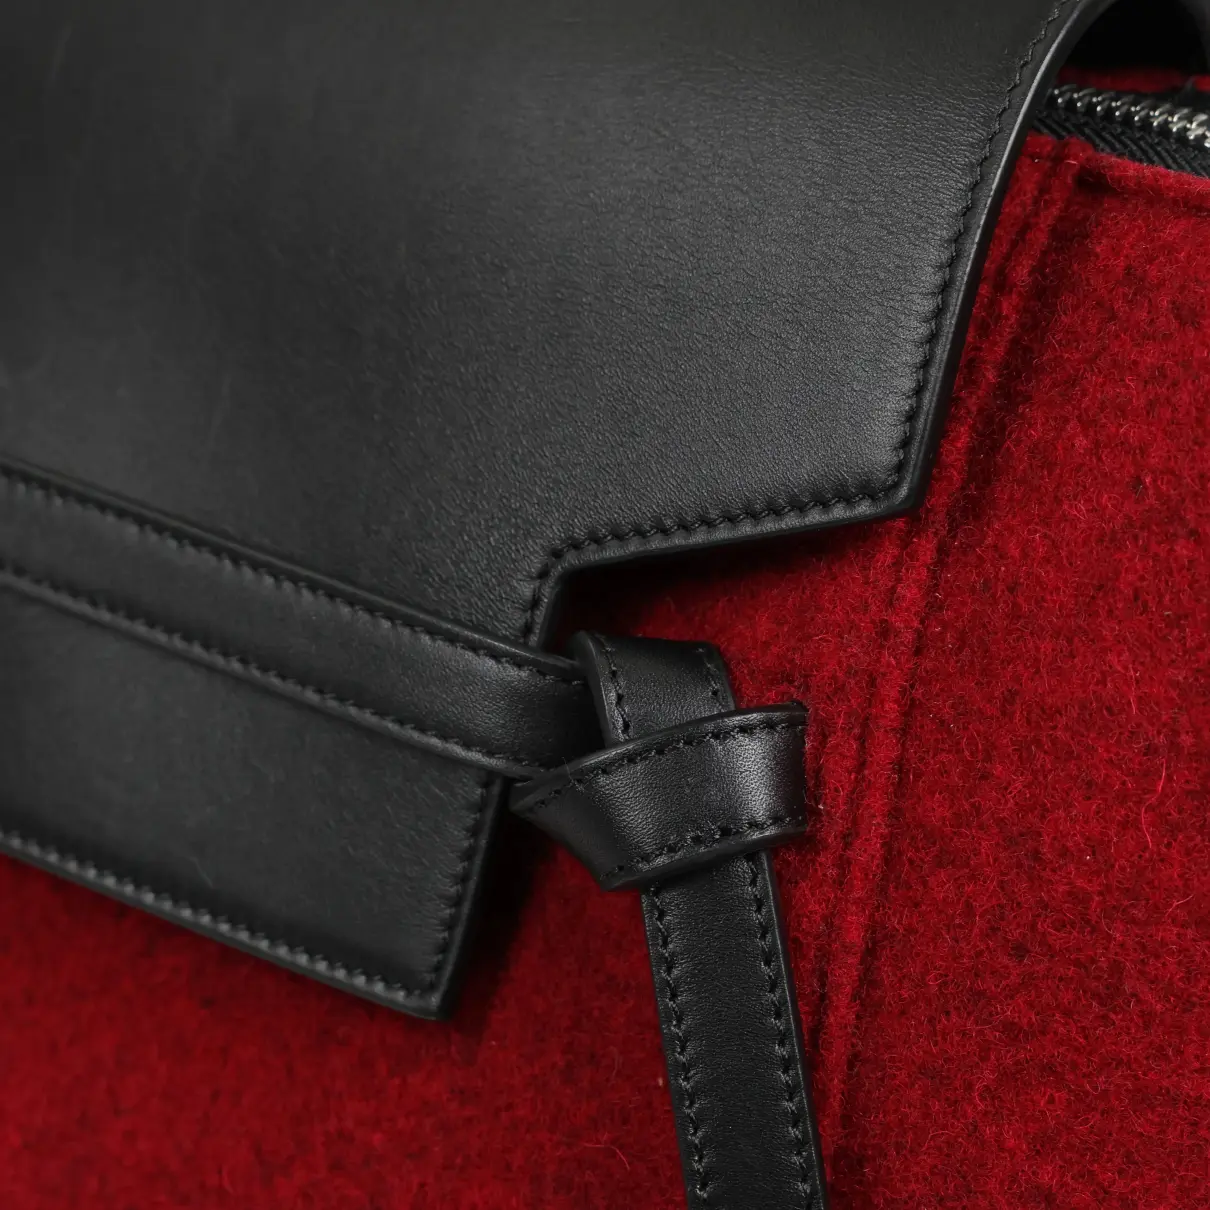 Belt leather mini bag Celine